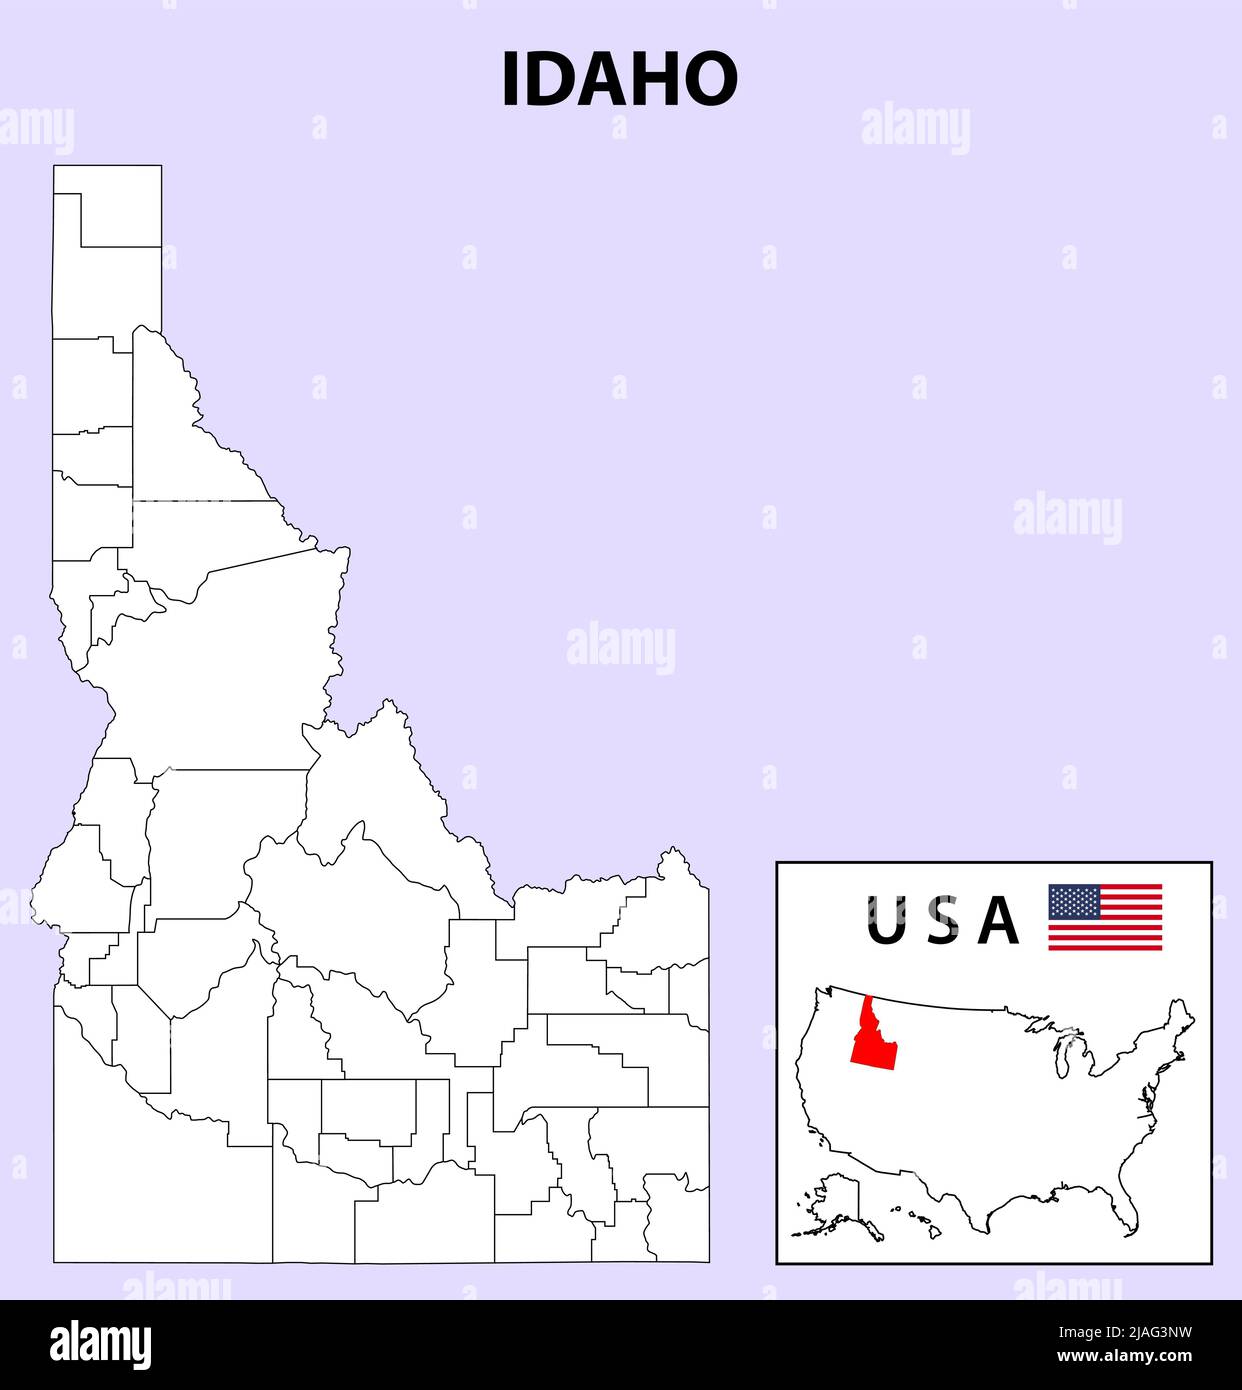 Mappa Idaho. Mappa dello stato e del distretto dell'Idaho. Mappa amministrativa e politica dell'Idaho con contorno e disegno in bianco e nero. Illustrazione Vettoriale